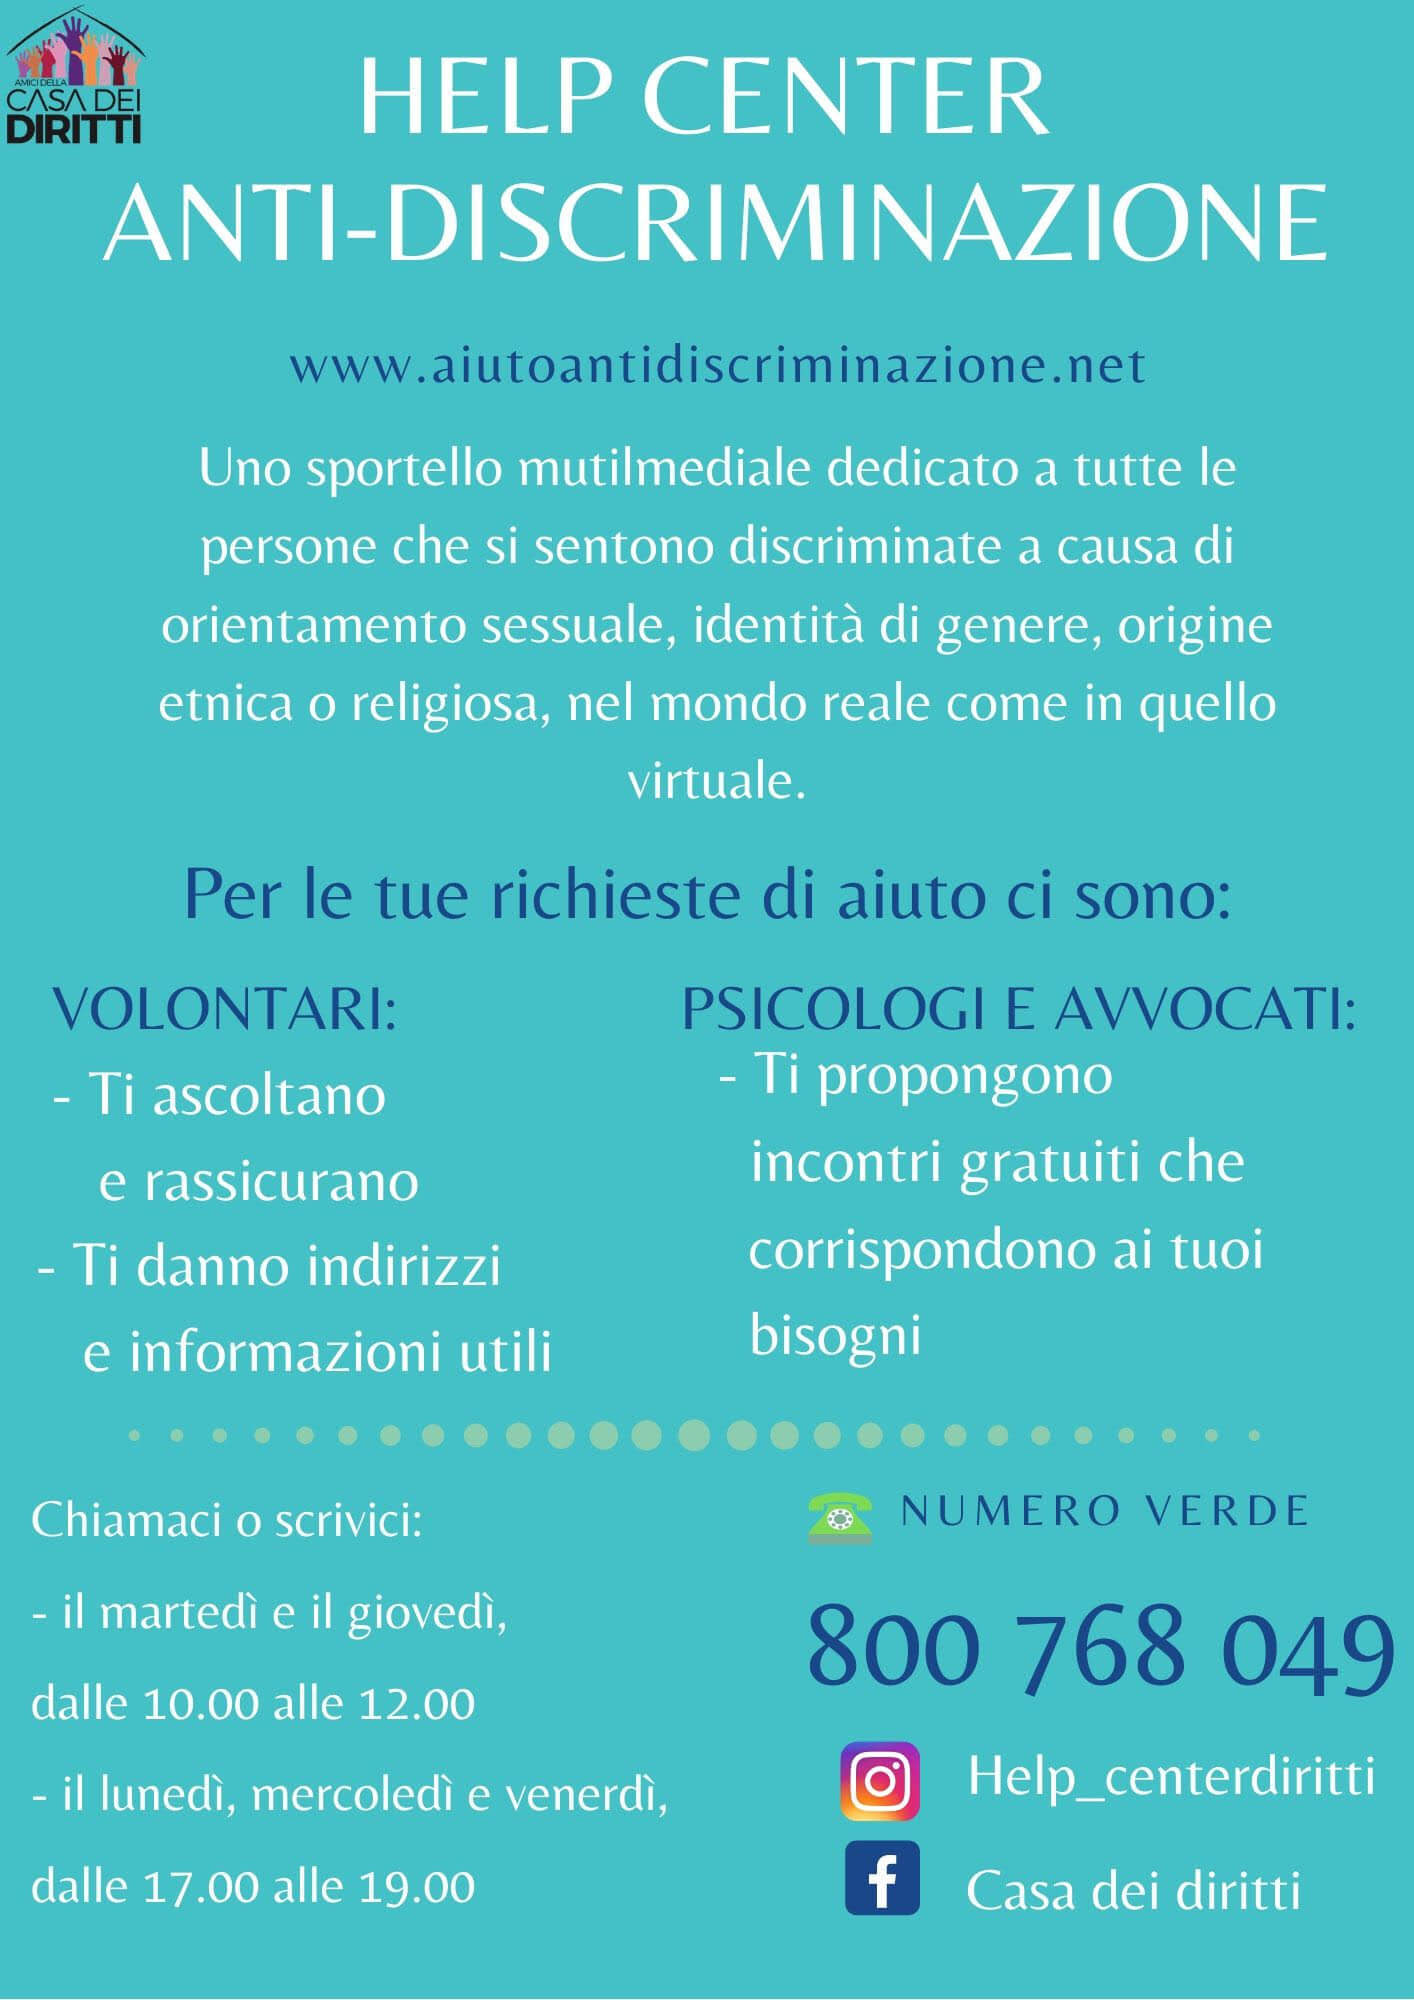 Milano, è nato l'Help Center Antidiscriminazioni per chi è vittima di omotransfobia - 83415053 964282030632209 6143544932712841216 o - Gay.it